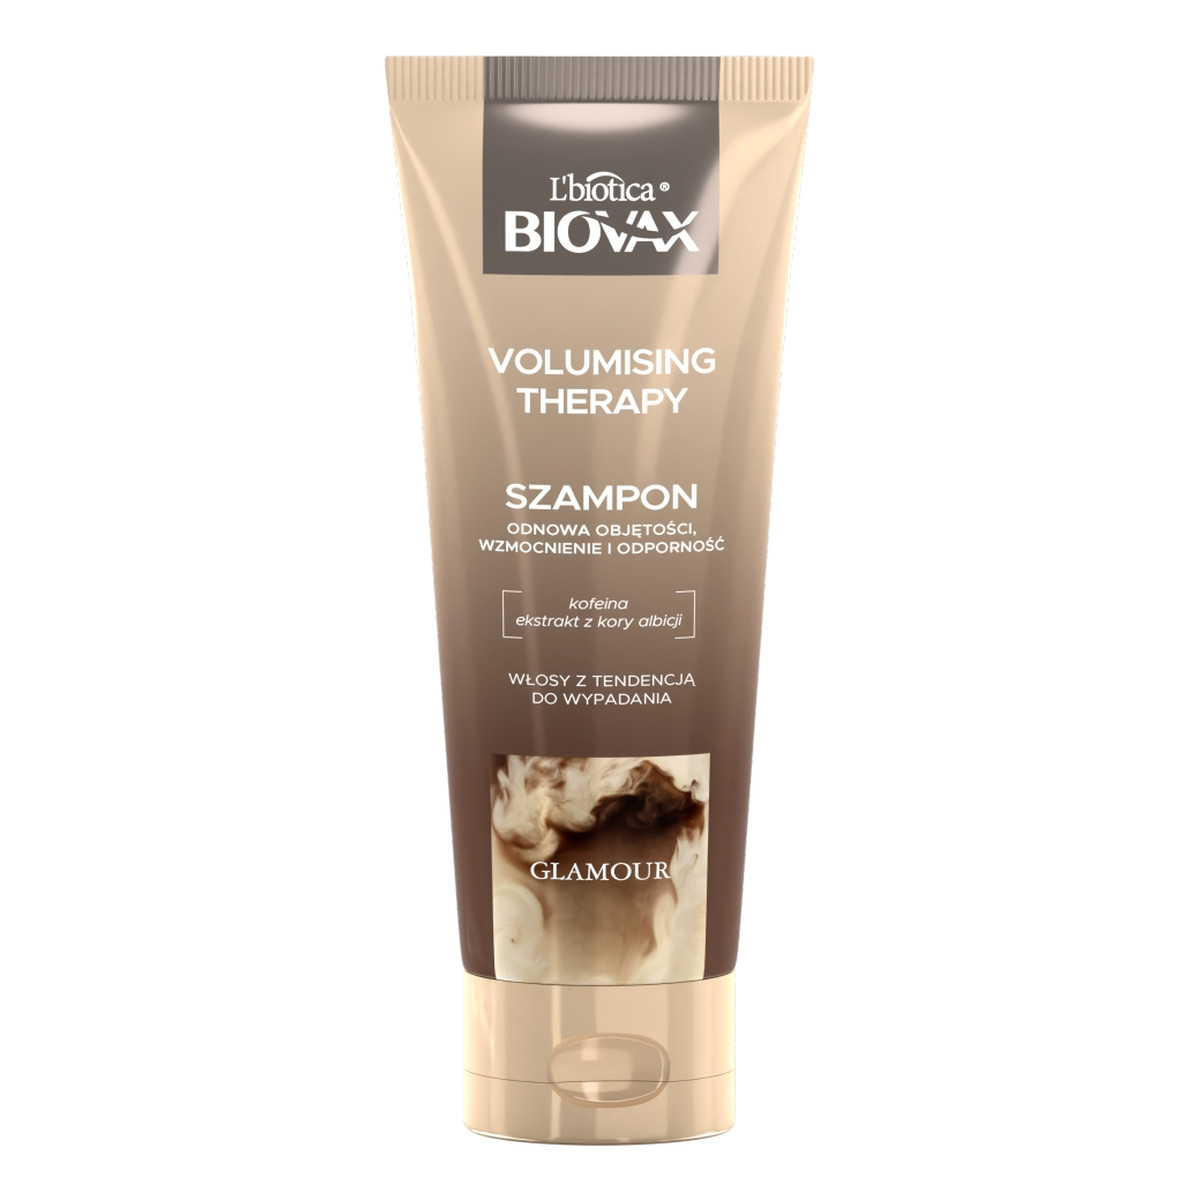 Biovax Glamour volumising therapy szampon do włosów z kofeiną 200ml